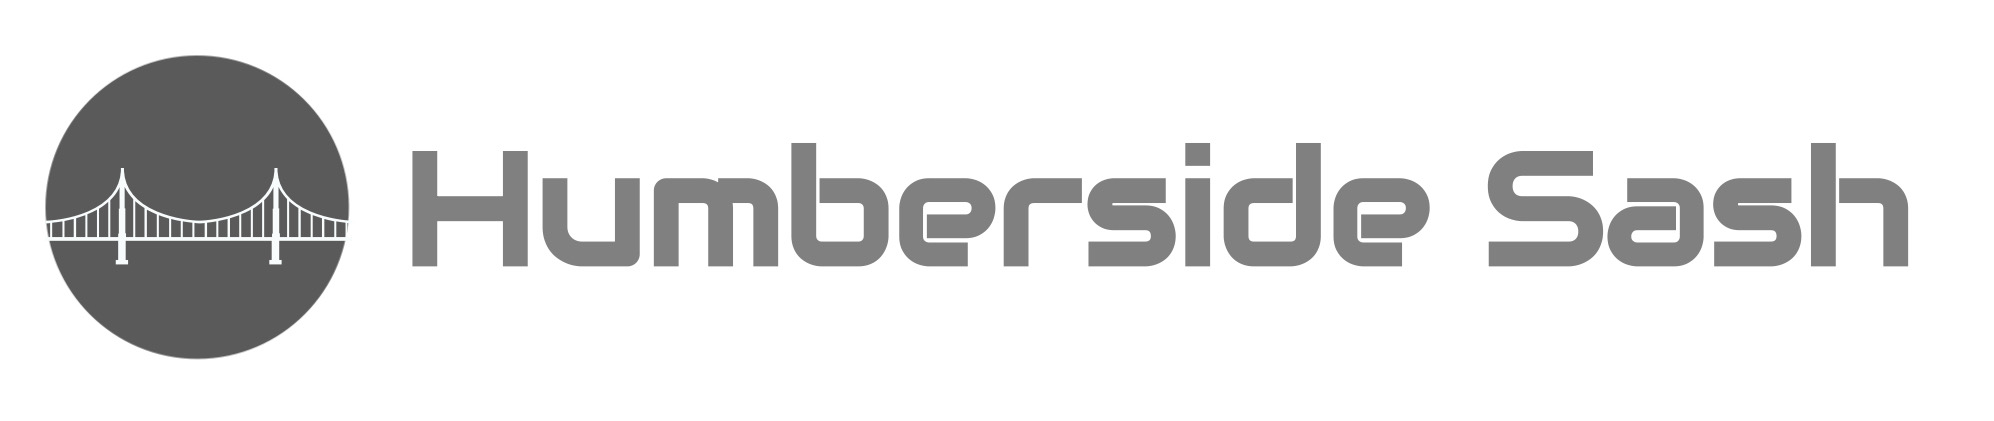 Humberside Sash logo